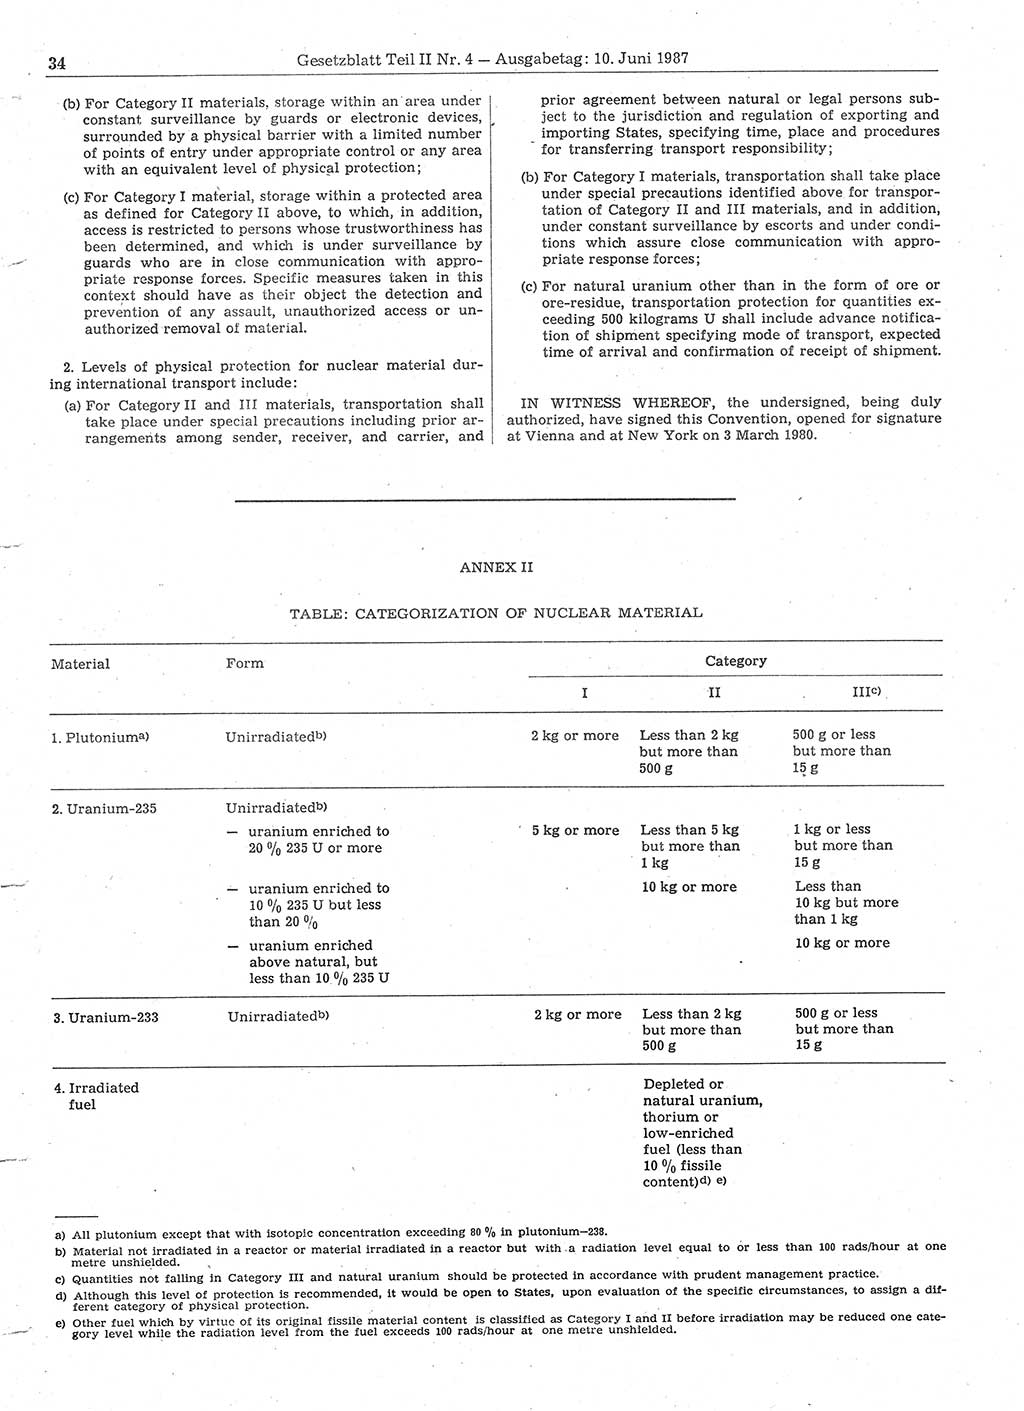 Gesetzblatt (GBl.) der Deutschen Demokratischen Republik (DDR) Teil ⅠⅠ 1987, Seite 34 (GBl. DDR ⅠⅠ 1987, S. 34)